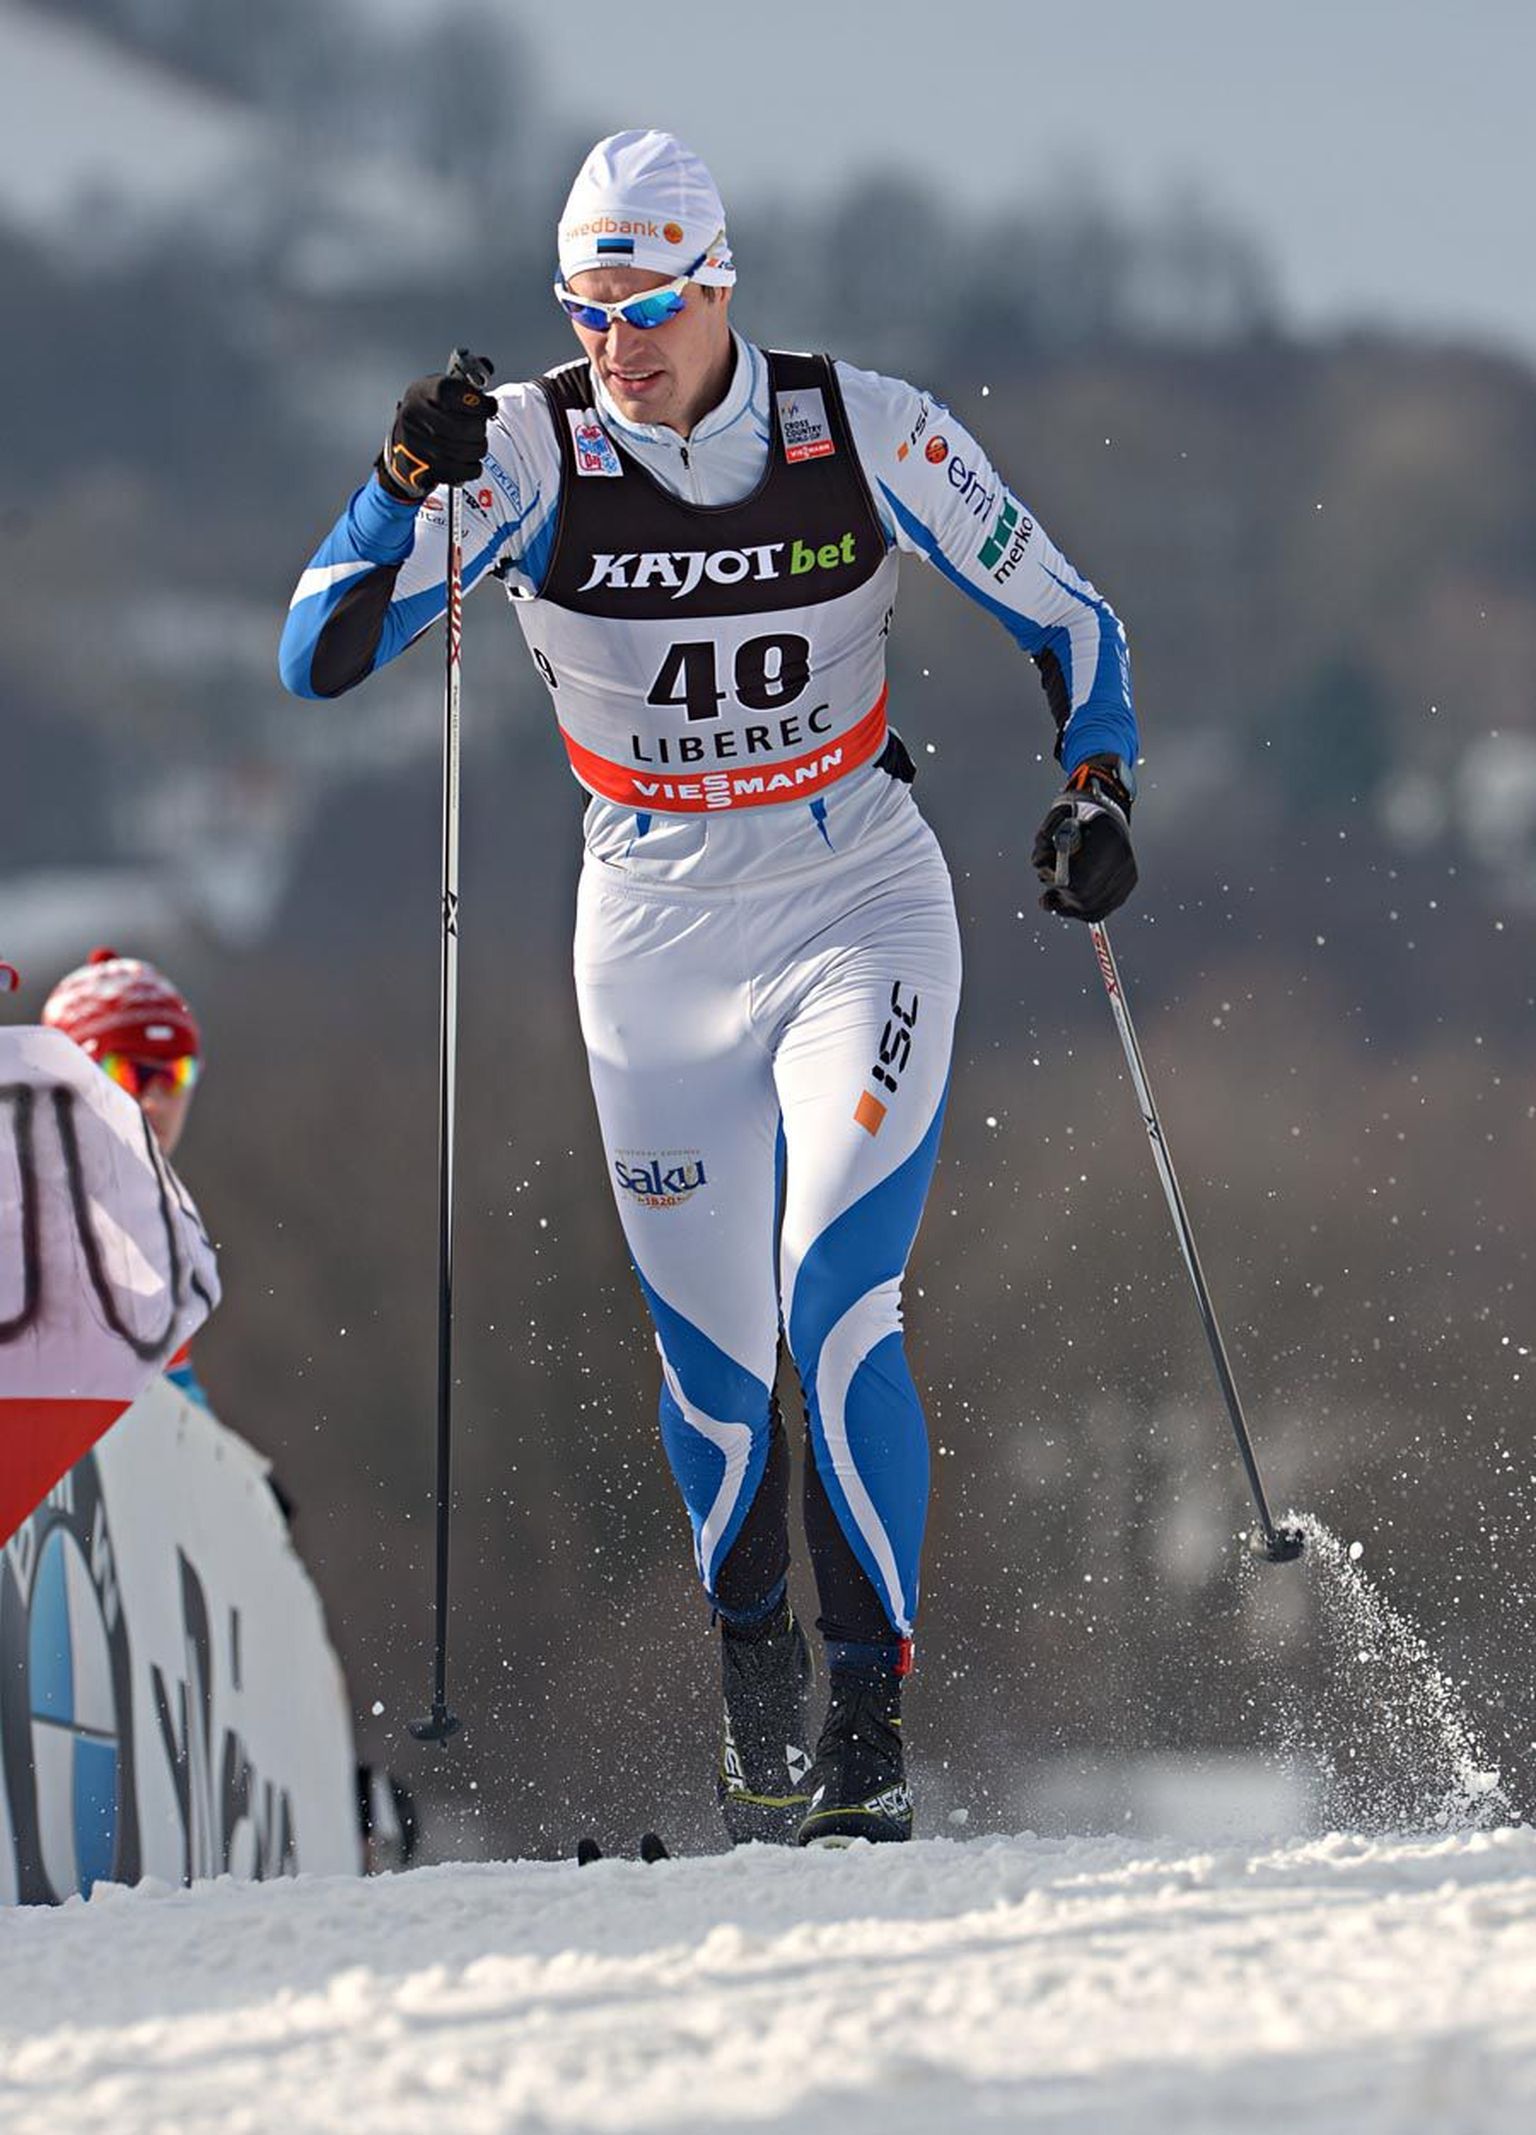 Liberecis oli eestlastest parim Kein Einaste, kes sai sprindi kvalifikatsioonis 35. koha.